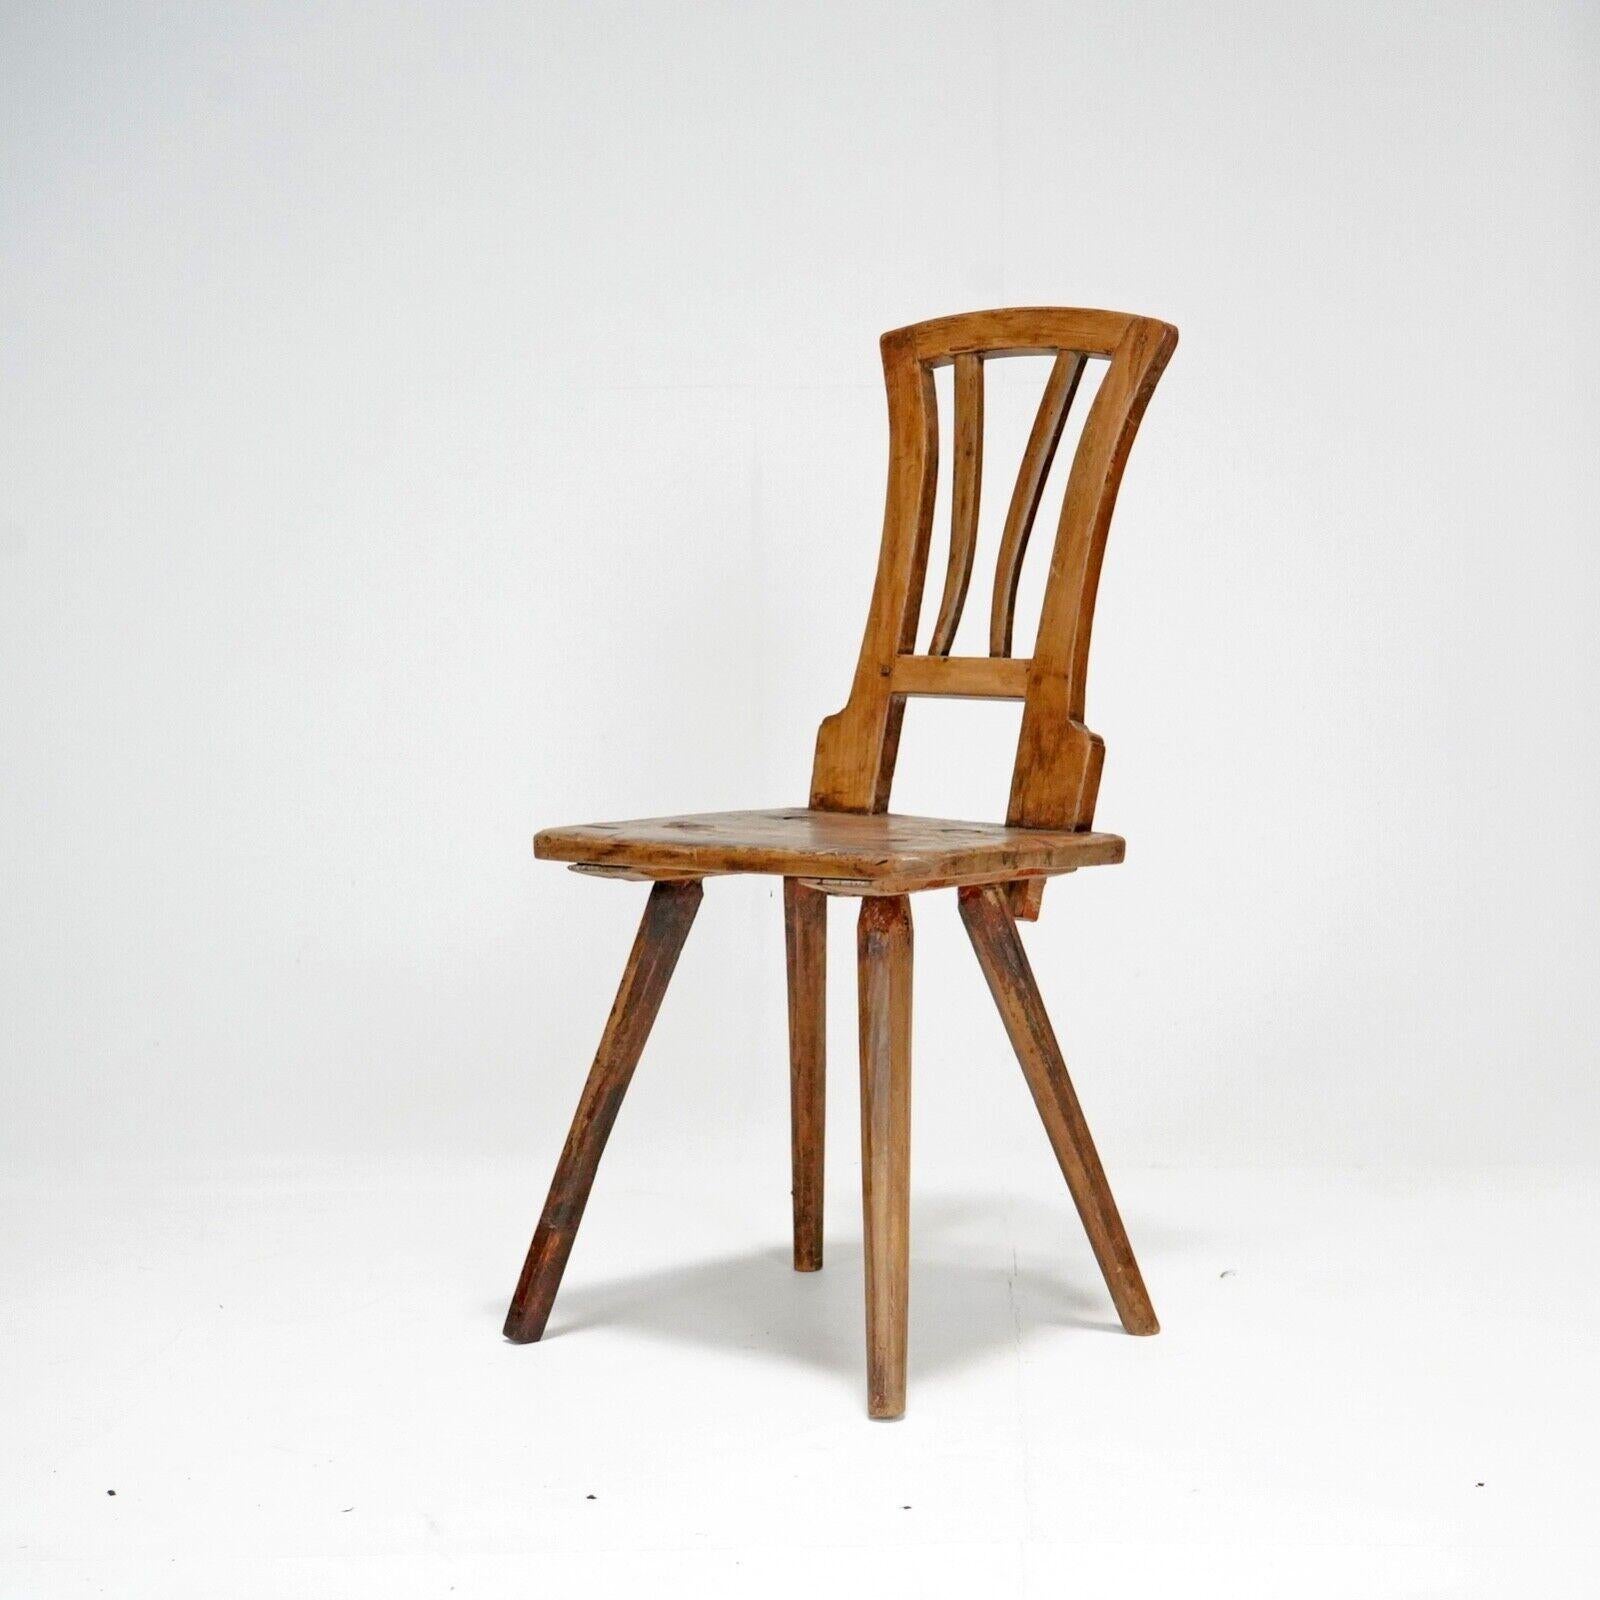 Antique 19th Century Primitive Wooden Stick Back Chair 1